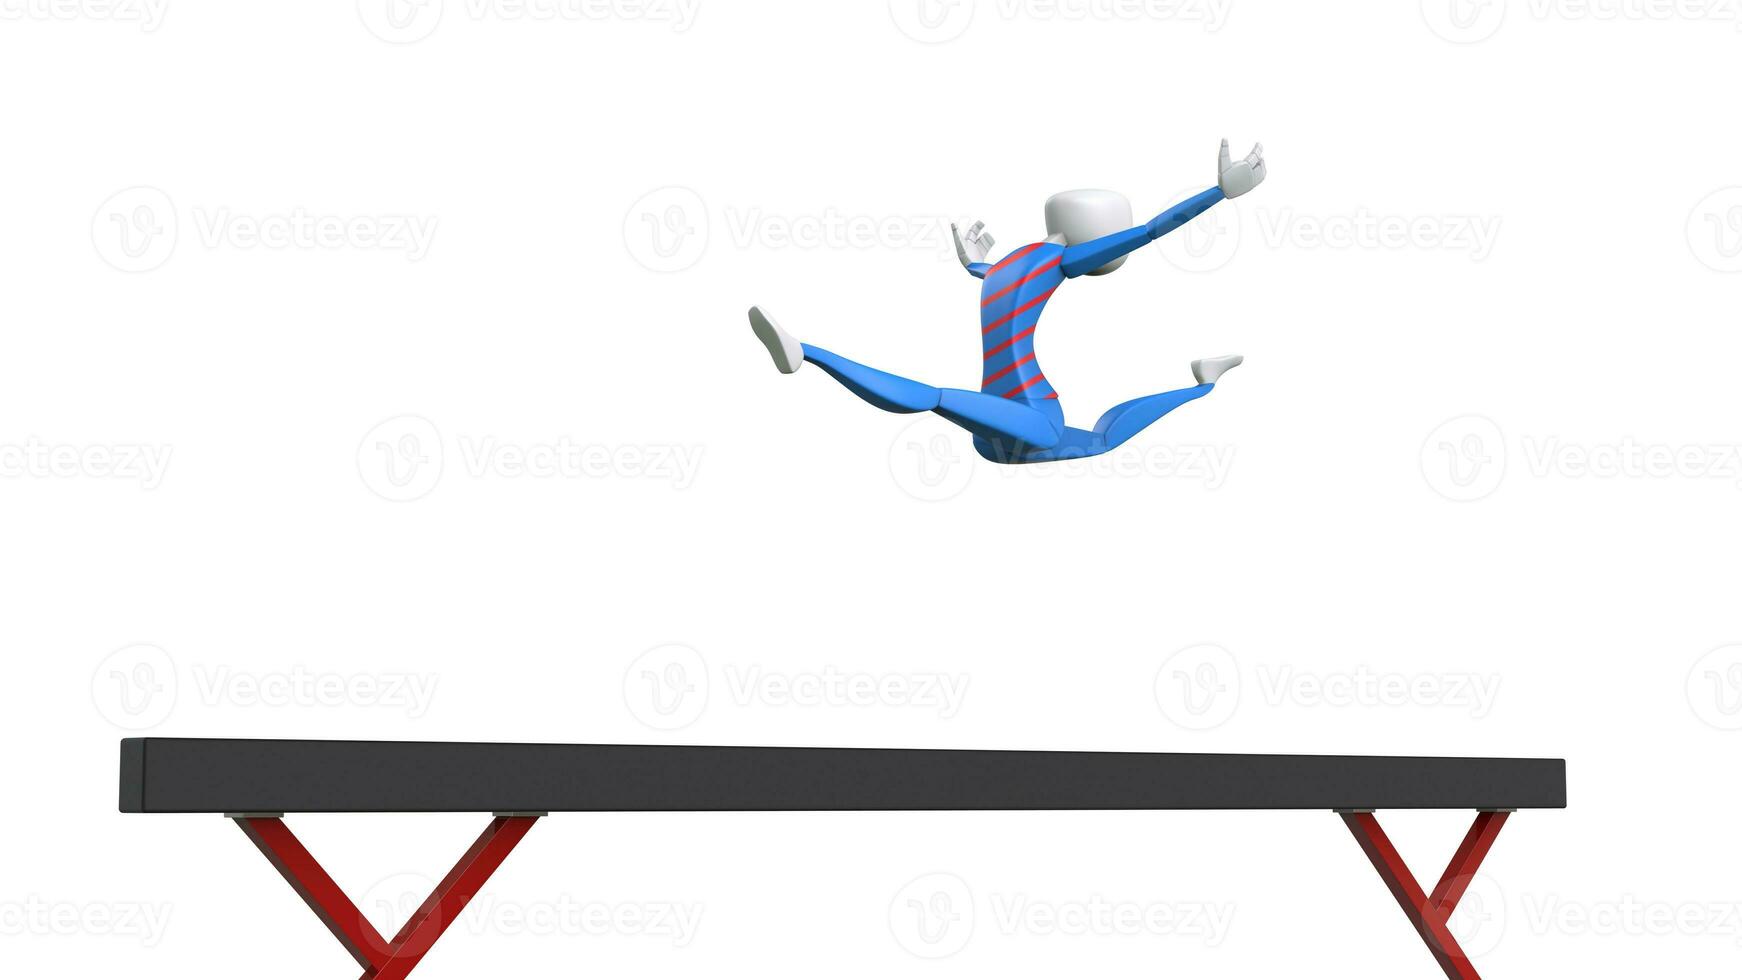 dela hoppa på en balans stråle - 3d illustration foto